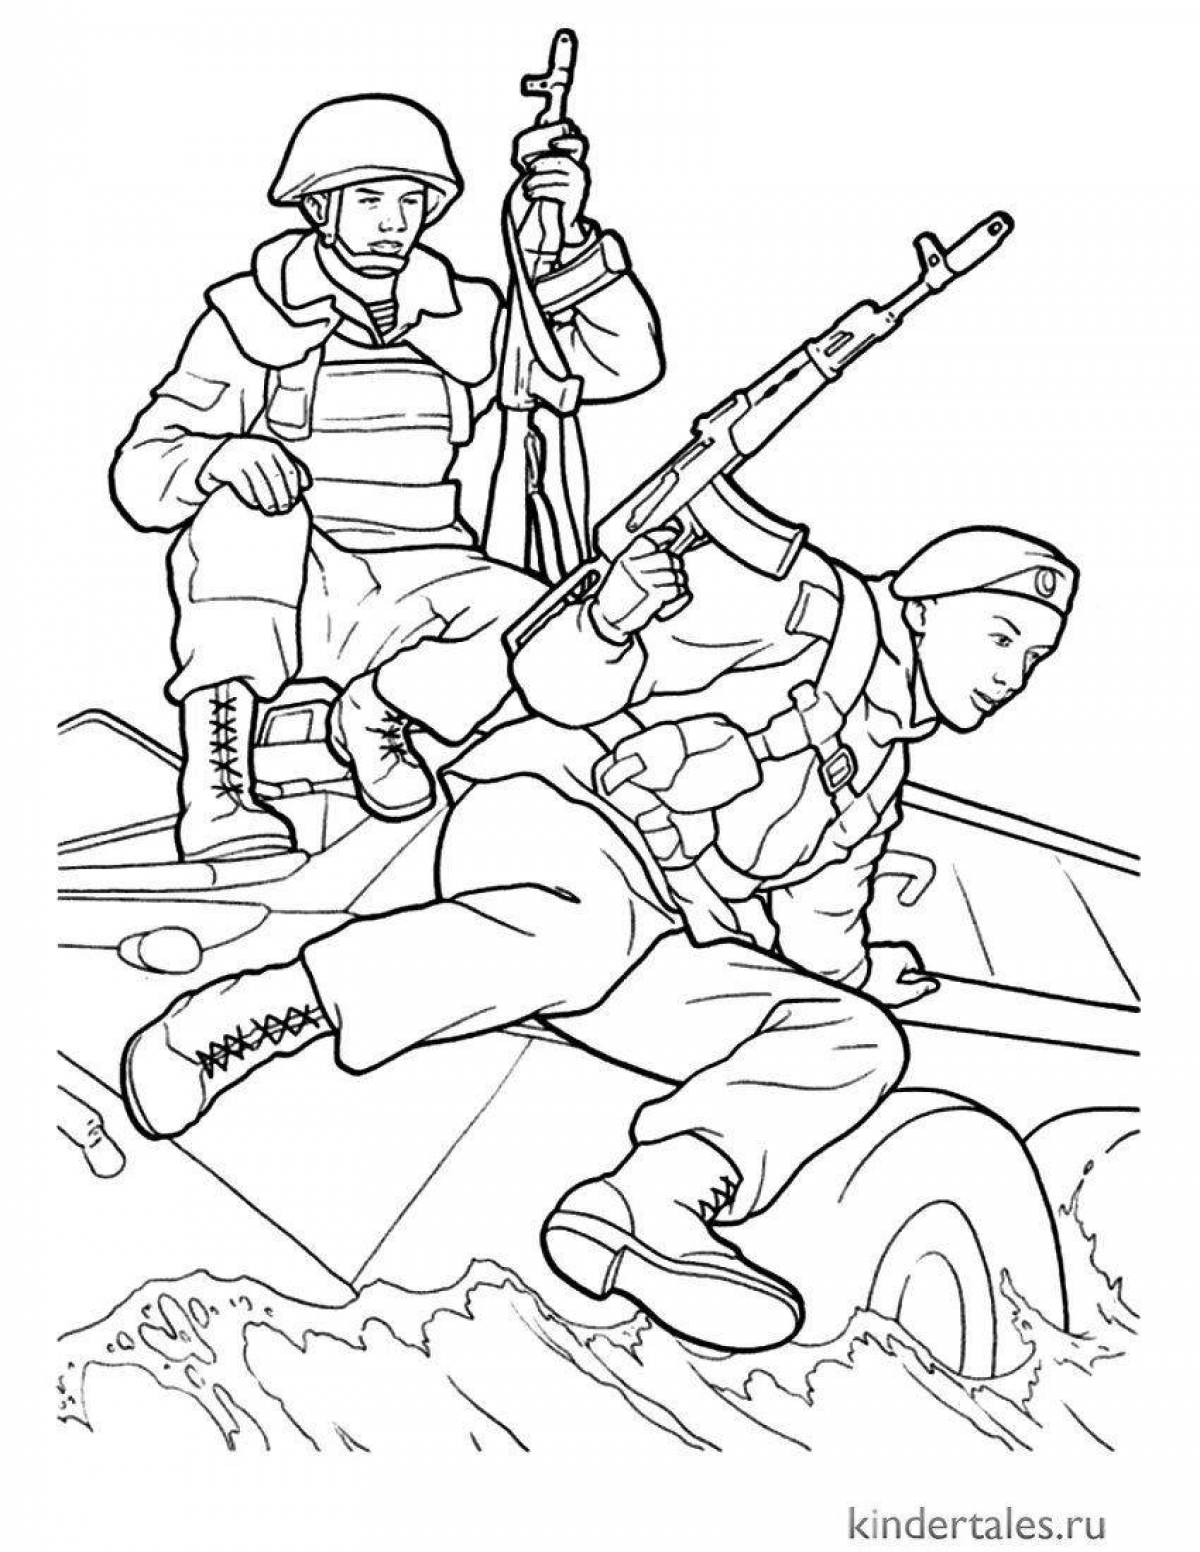 Раскраска остроумный солдат 23 февраль